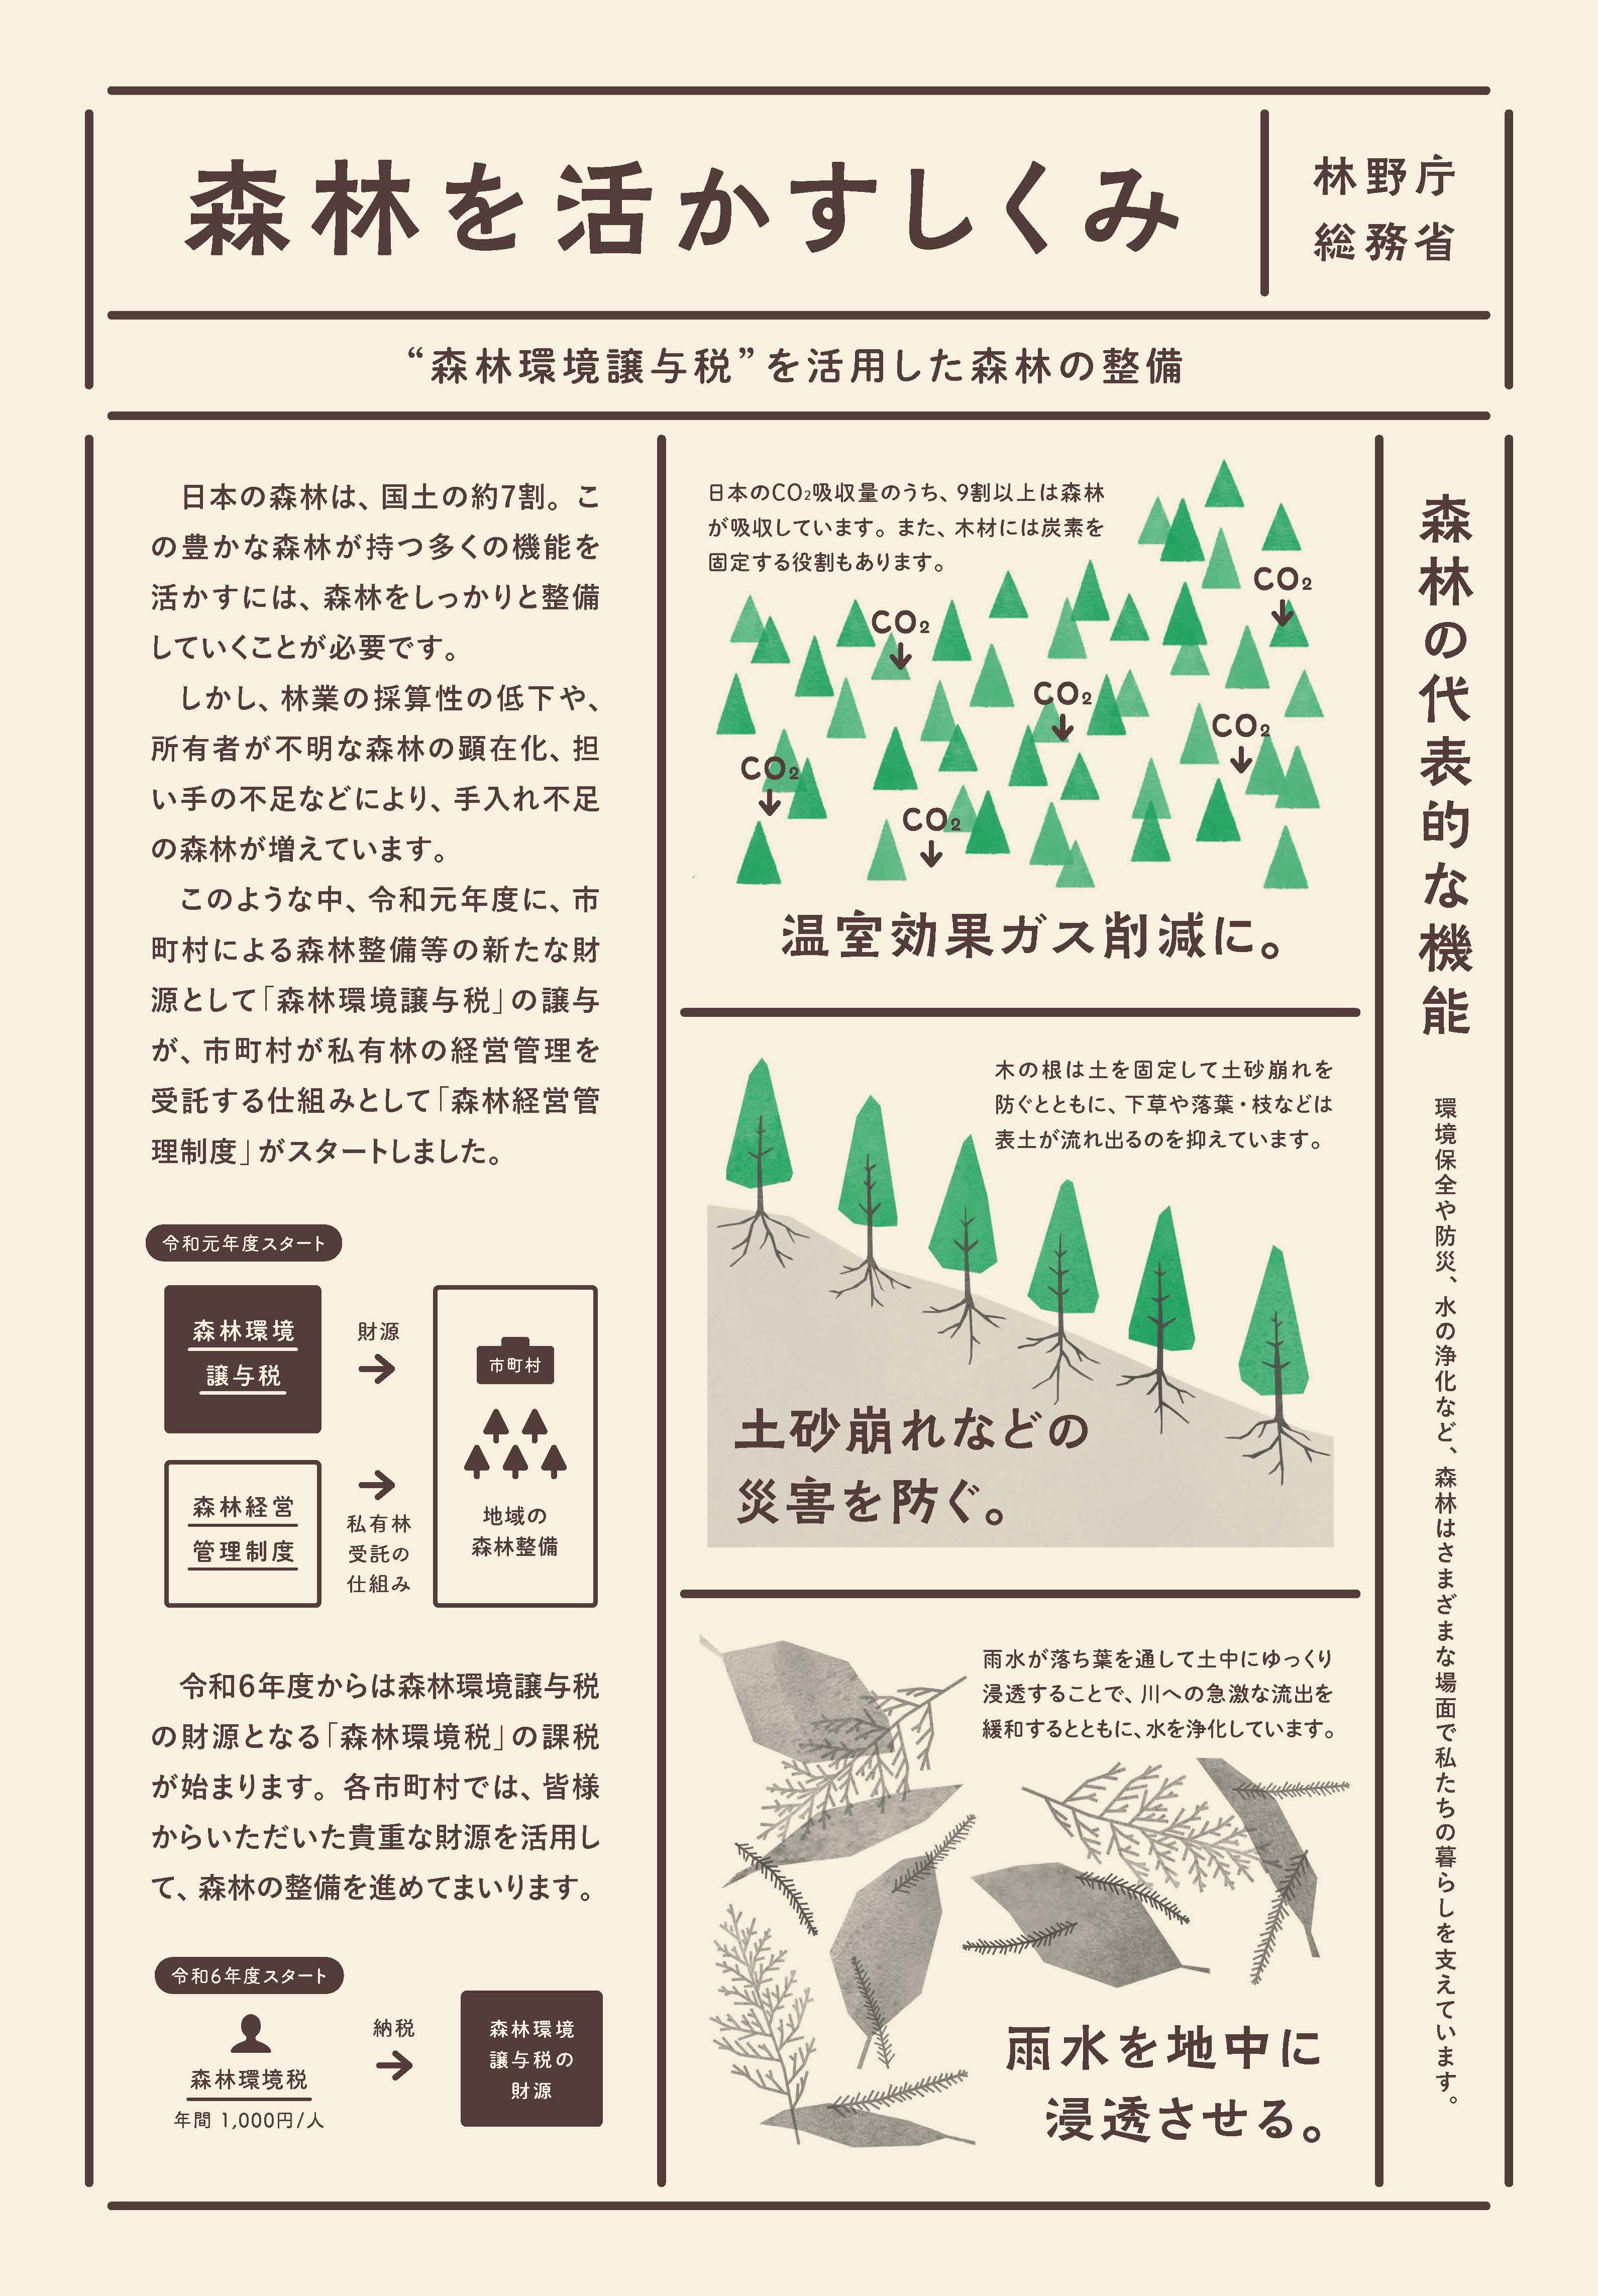 森林環境譲与税を活用した自治体の取組の紹介 Vol.9 長崎県